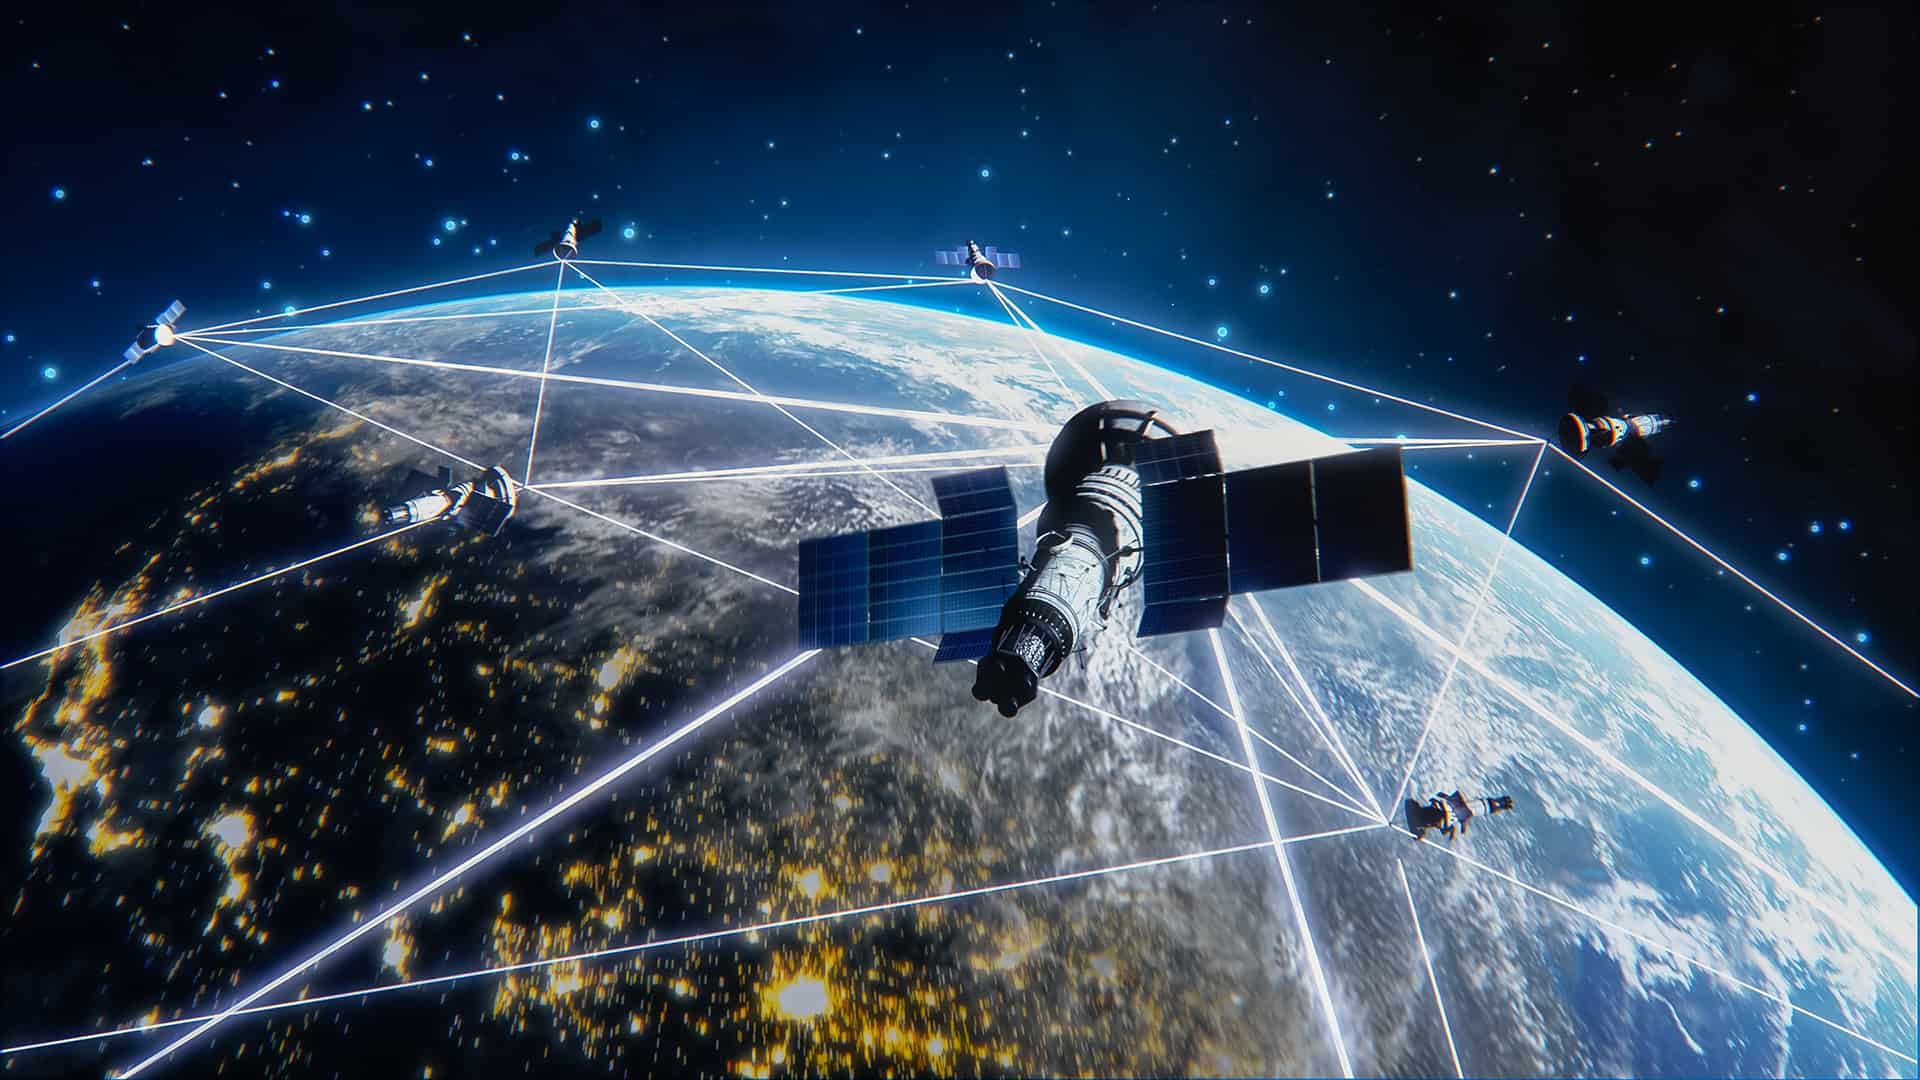 स्पेसएक्सद्वारा थप २३ ‘स्टारलिंक’ इन्टरनेट उपग्रह अन्तरिक्षमा प्रक्षेपण